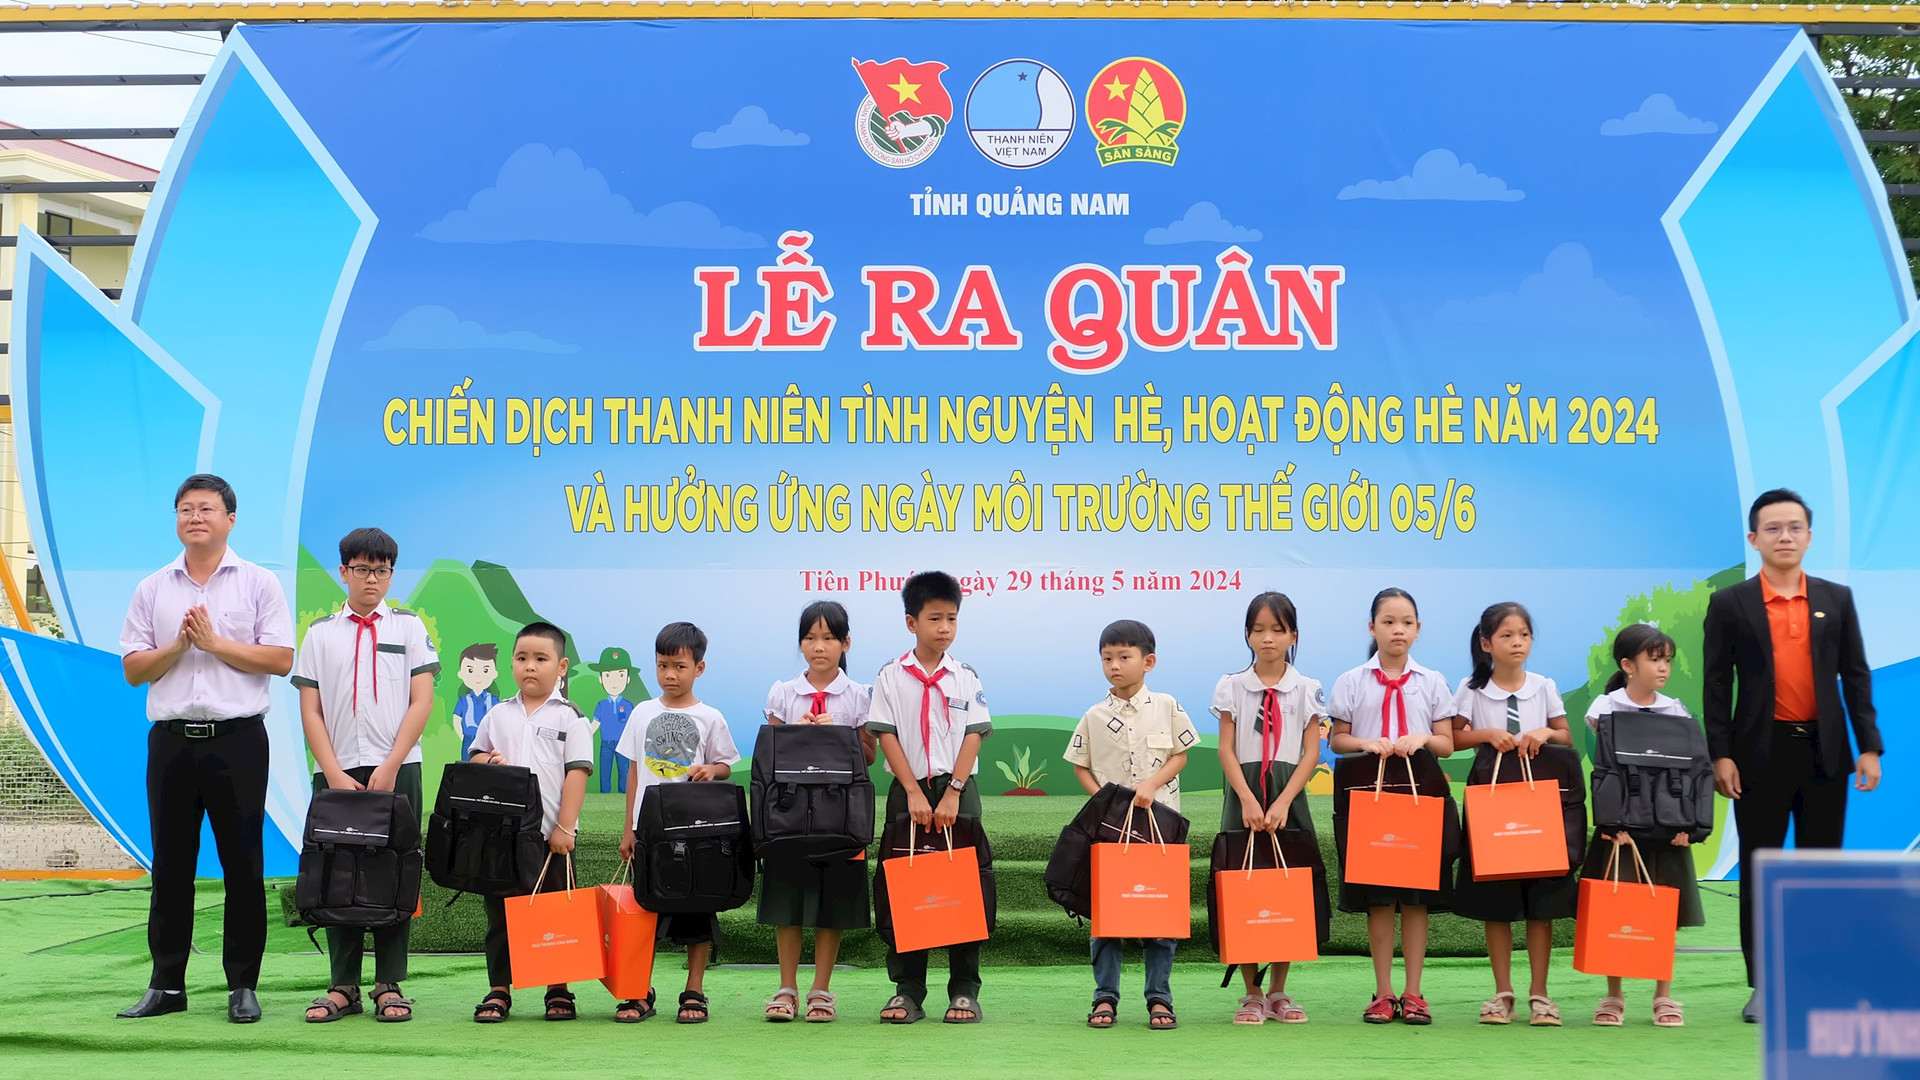 Trường Cao đẳng FPT Polytechnic cơ sở Quảng Nam trao tặng quà cho trẻ em khó khăn. Ảnh: M.L